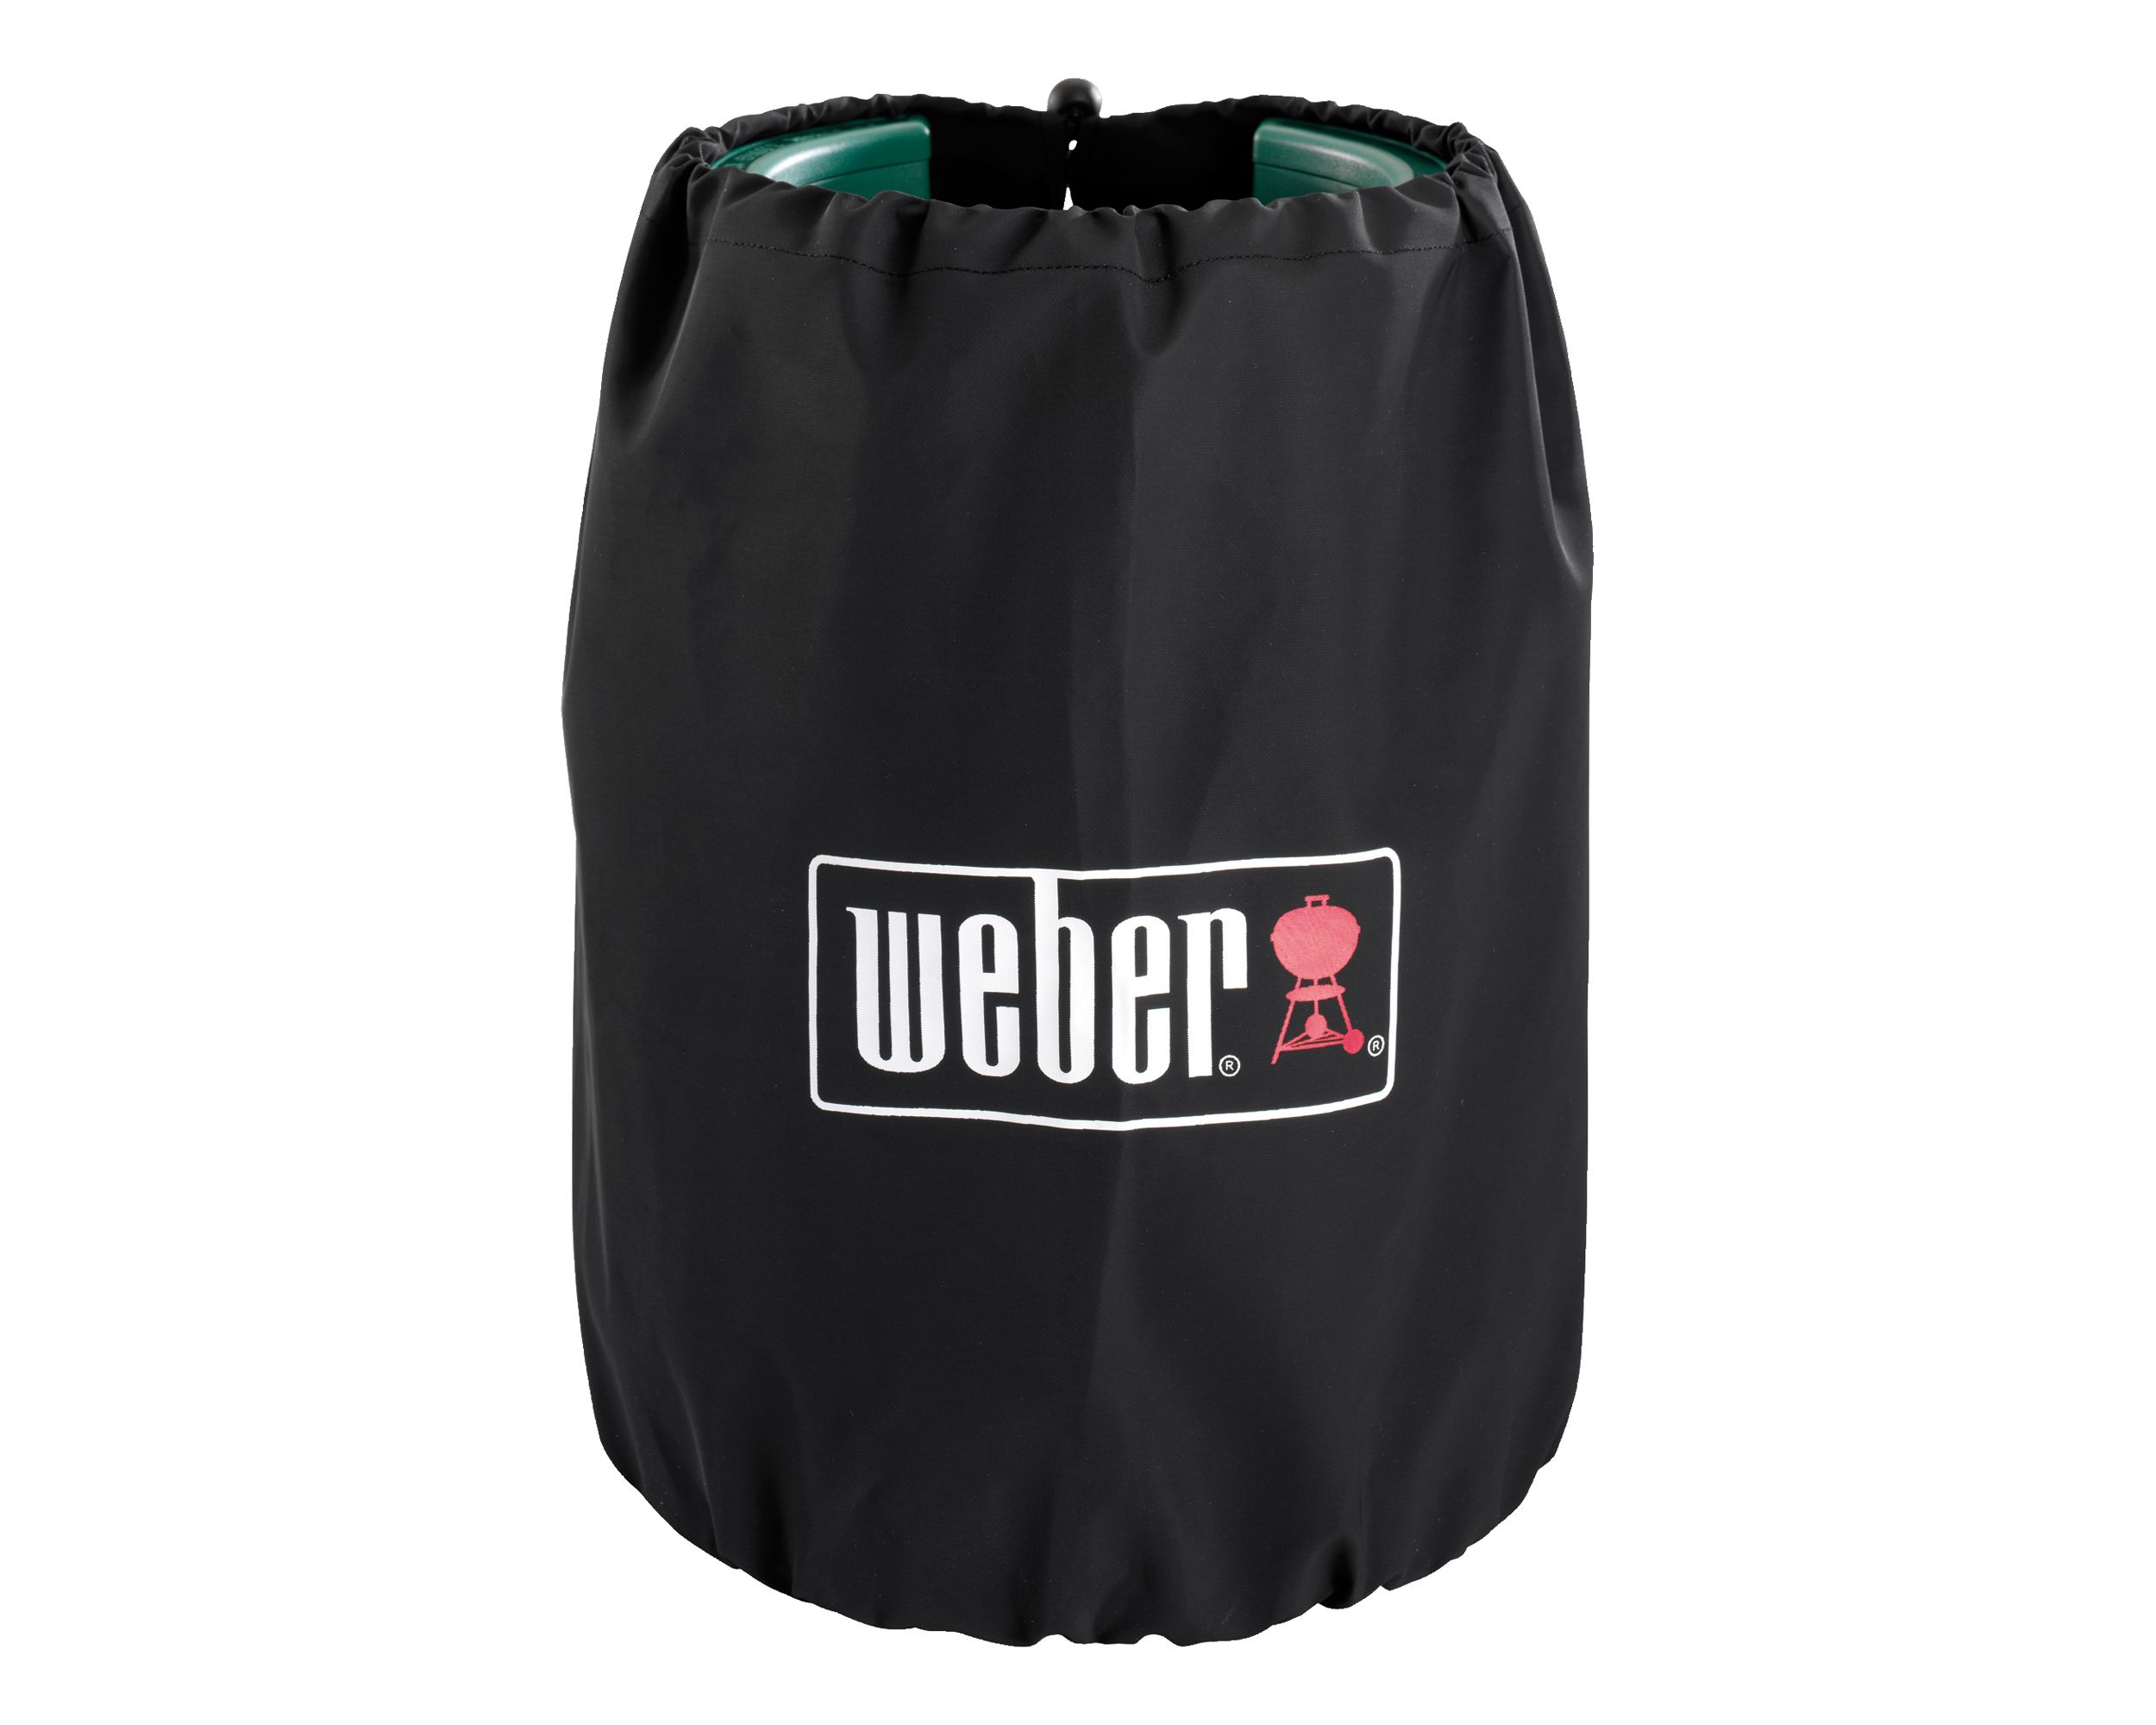 Weber® Gasflaschenschutzhülle klein, 5 kg